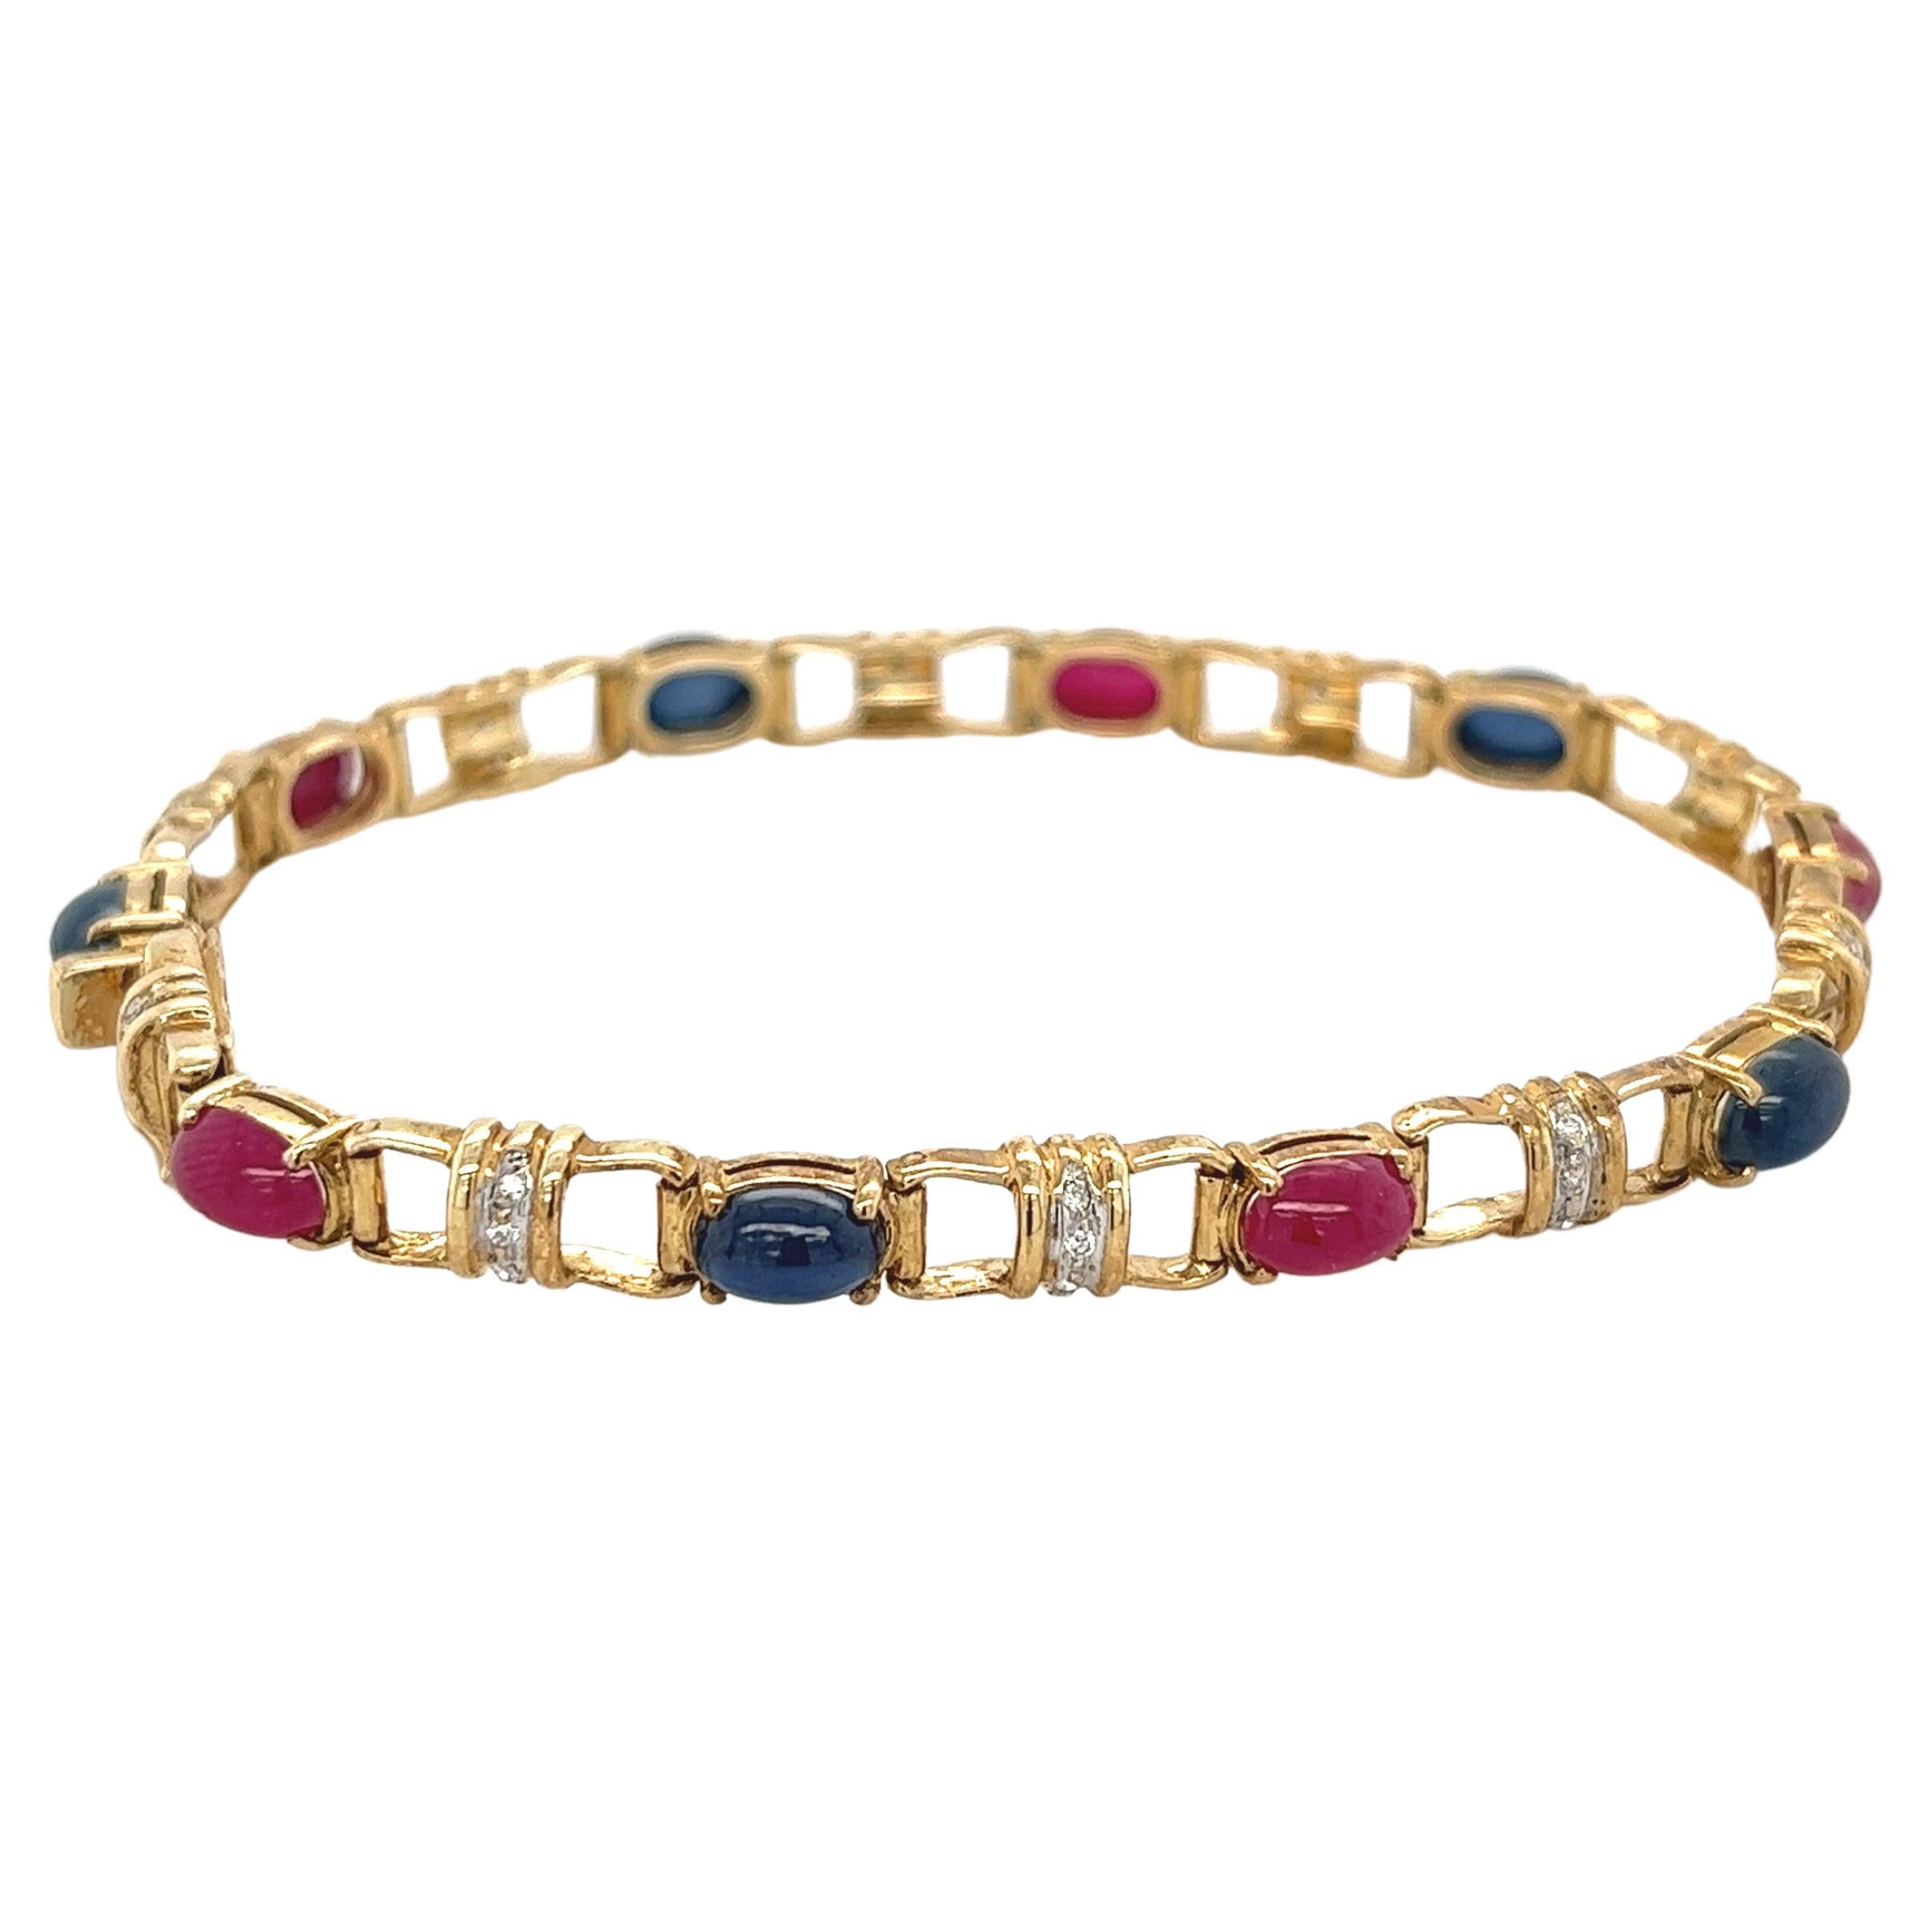 Bracelet à breloques en or 18 carats avec saphir bleu taille cabochon, rubis et diamants